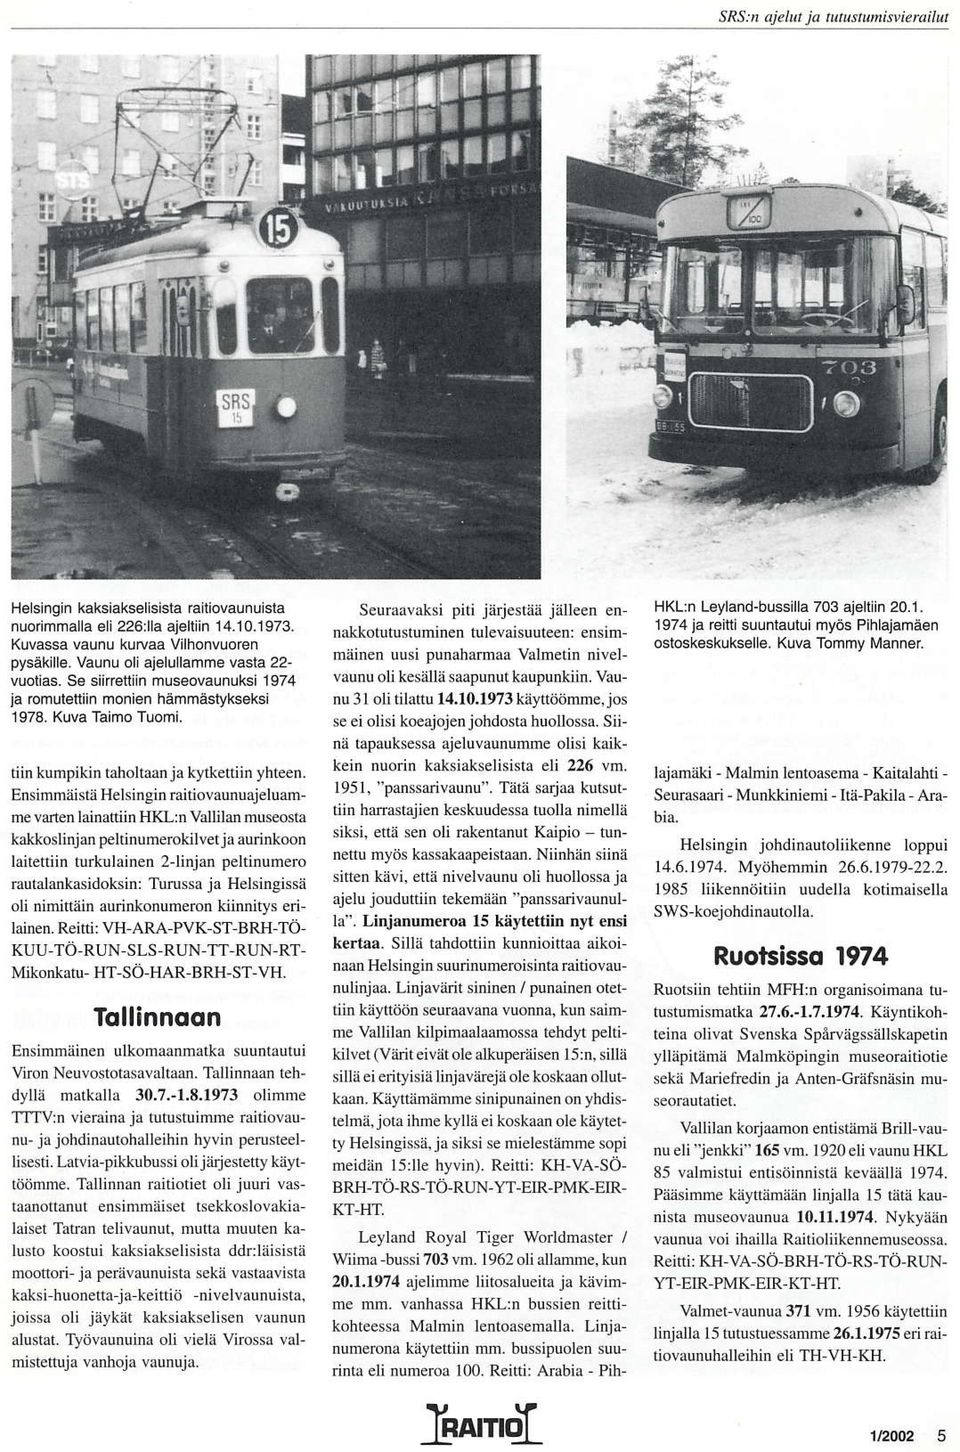 EnsimmäislåHehinsin railiovaunuajelumme vanen lainattiin HKL:i valiild museosrä kaktoslinjd peltinumeroklvet iaaurinkoon låite(iin td.